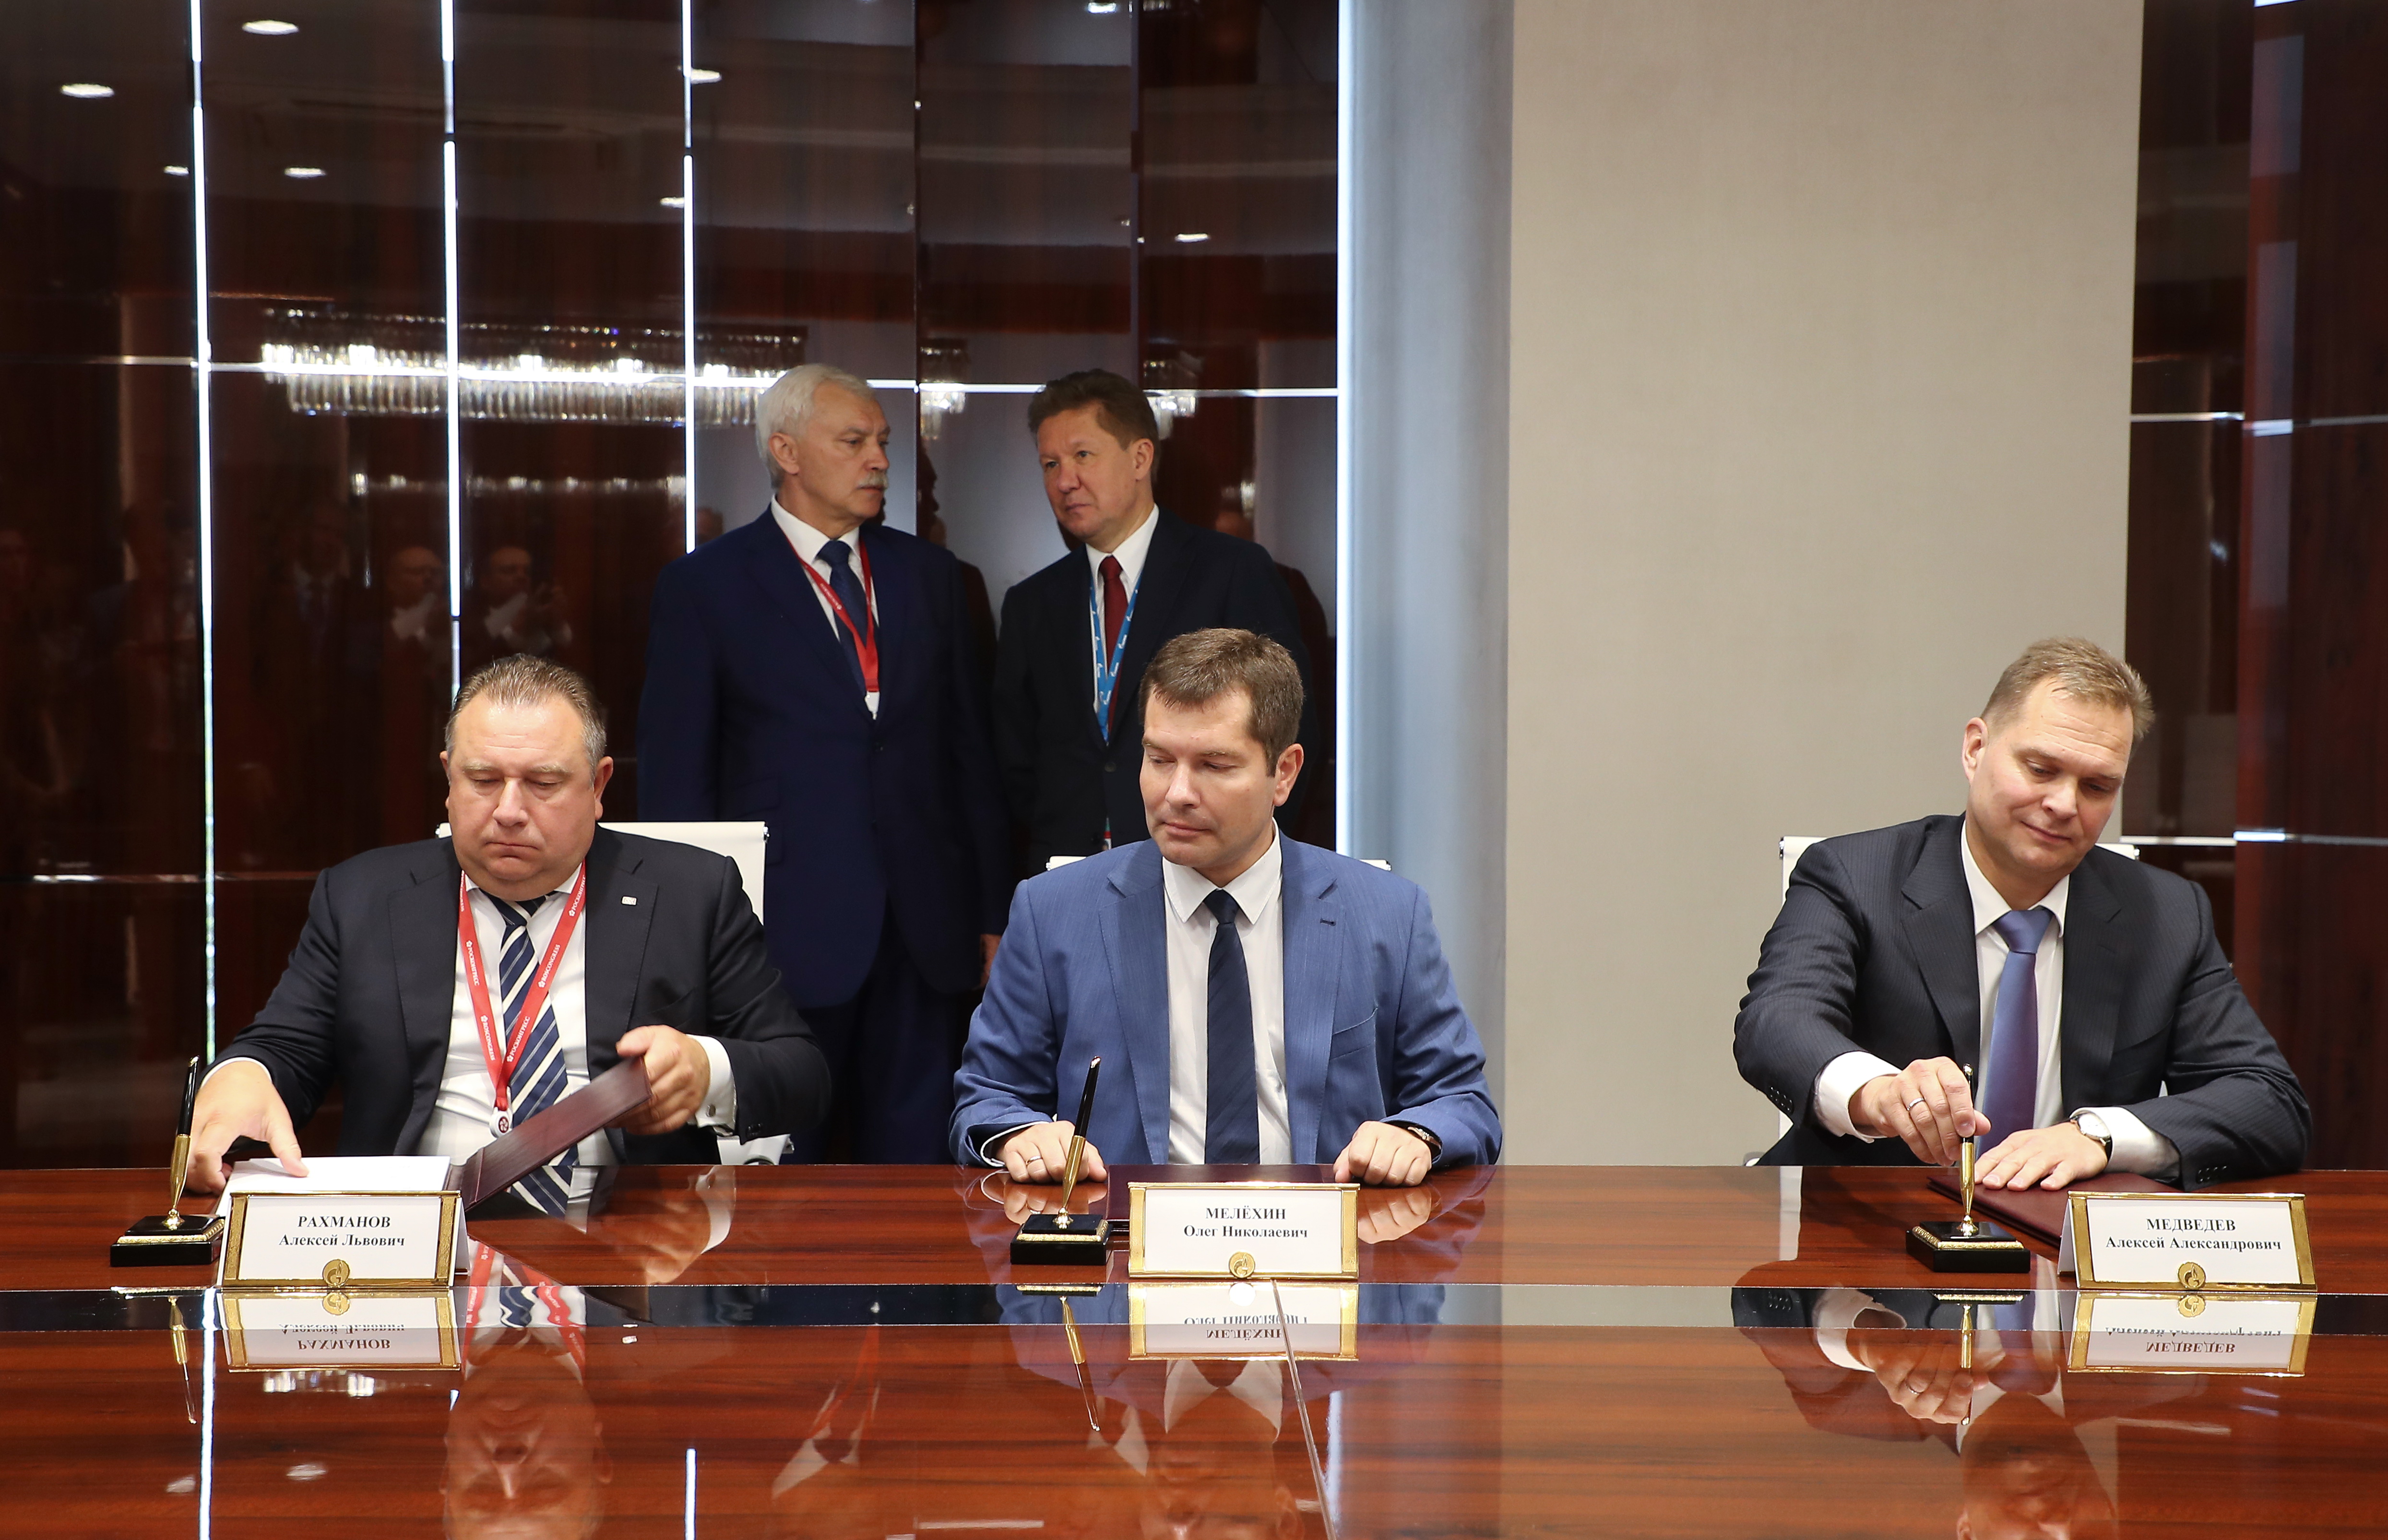 Gazprom Gazomotornoye Toplivo, Gazpromneft Marine Bunker, and USC agree on strategic partnership